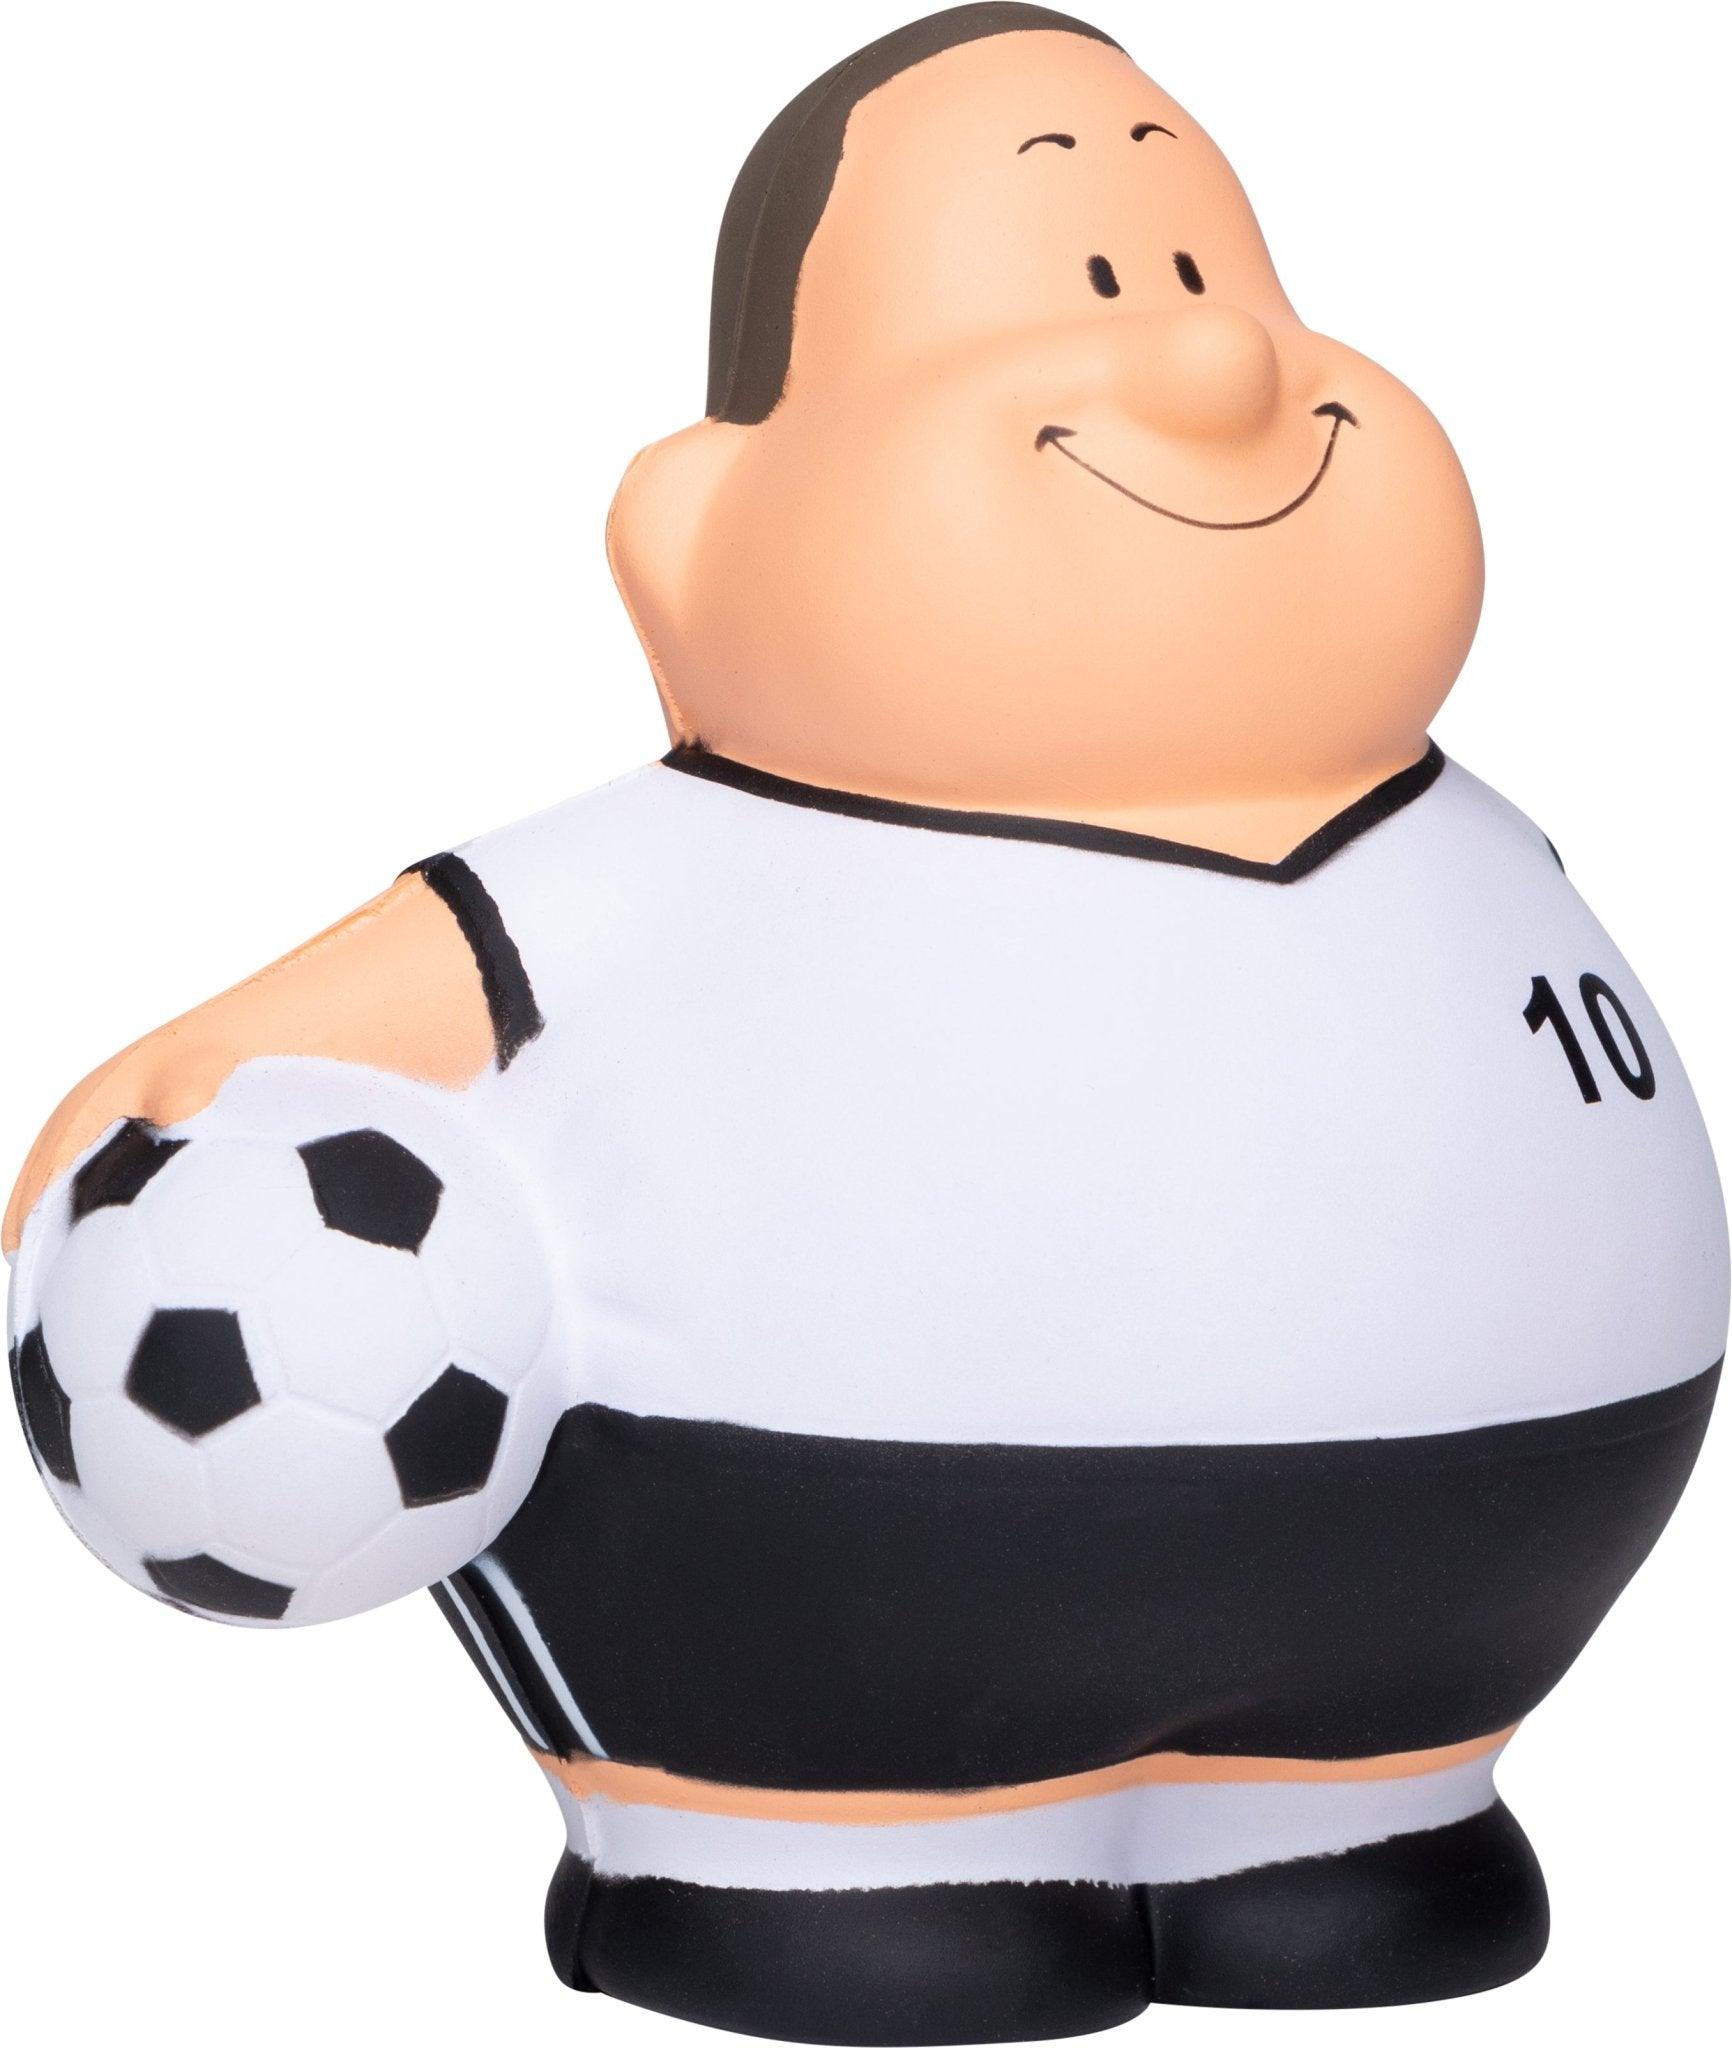 Soccer Bert (Fußball) Anti-Stress-Quetsch-Figur - HalloGeschenk.de #geschenkideen# #personalisiert# #geschenk#